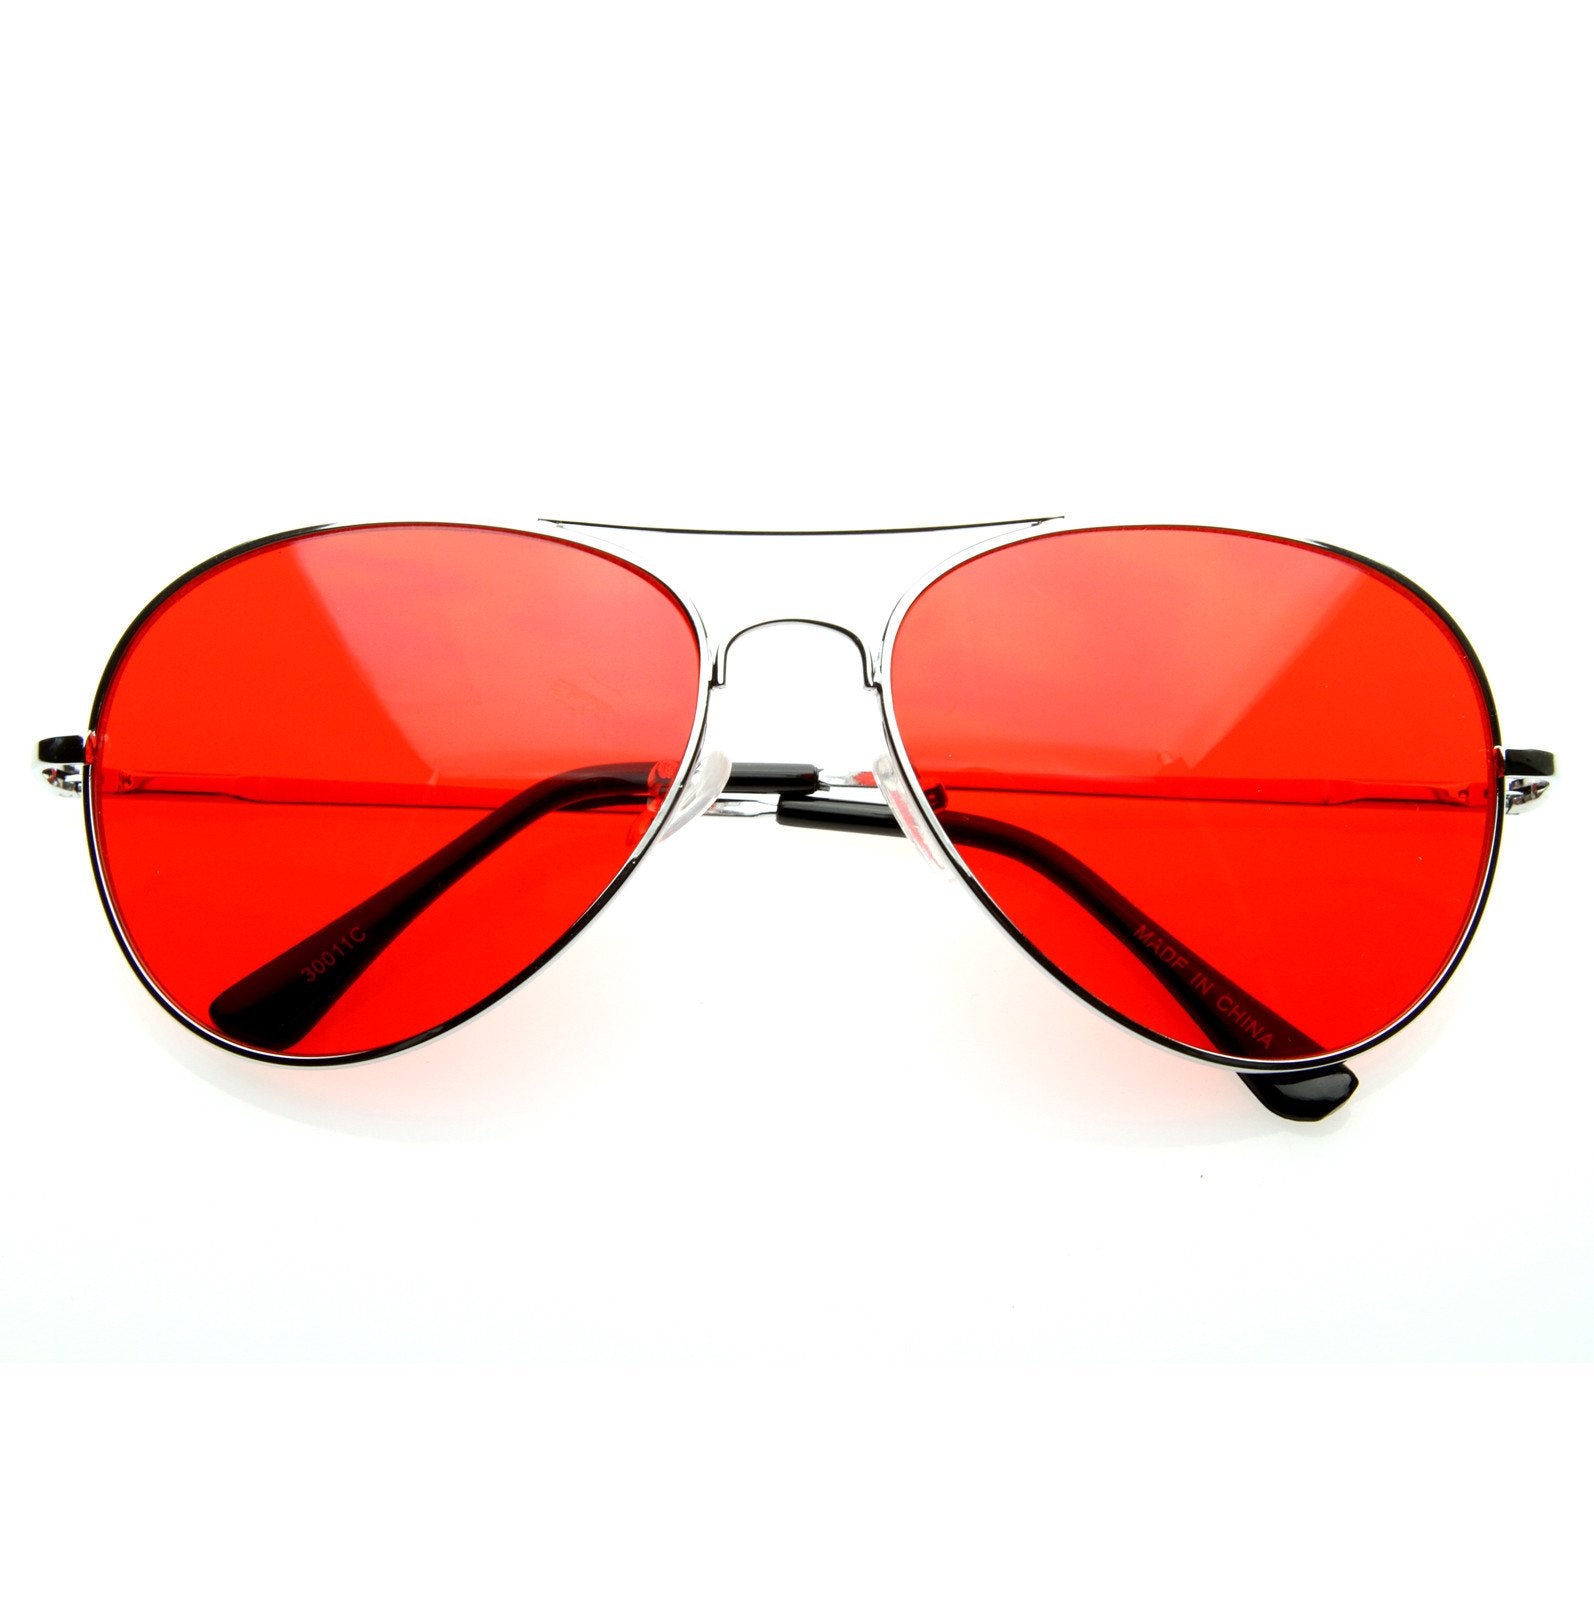 Мужские красные очки солнцезащитные. Очки Авиаторы ray ban красные. Очки ray ban ретро. Очки пилоты ray ban. Очки ray ban цветные.